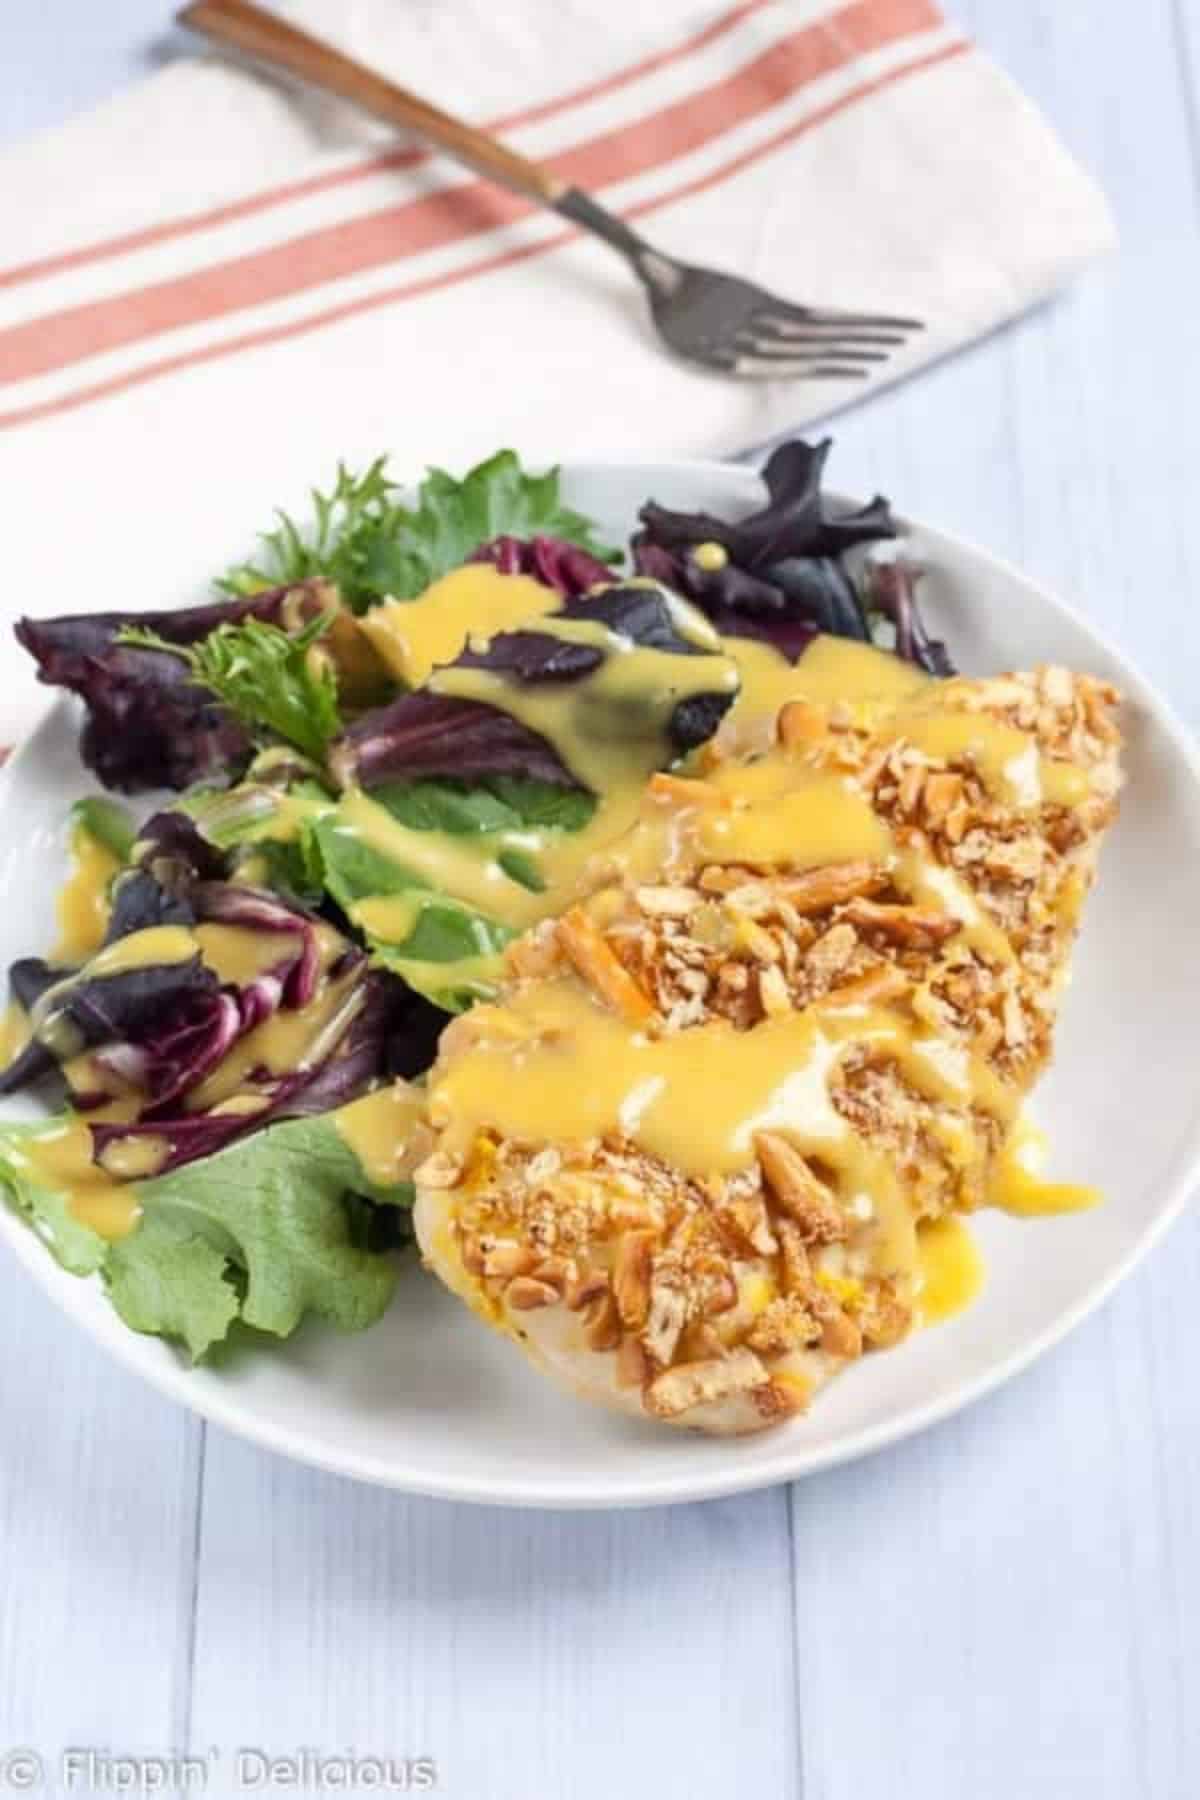 Crispy Gluten-Free Pretzel Chicken with Honey Mustard wit salad on a white plate.